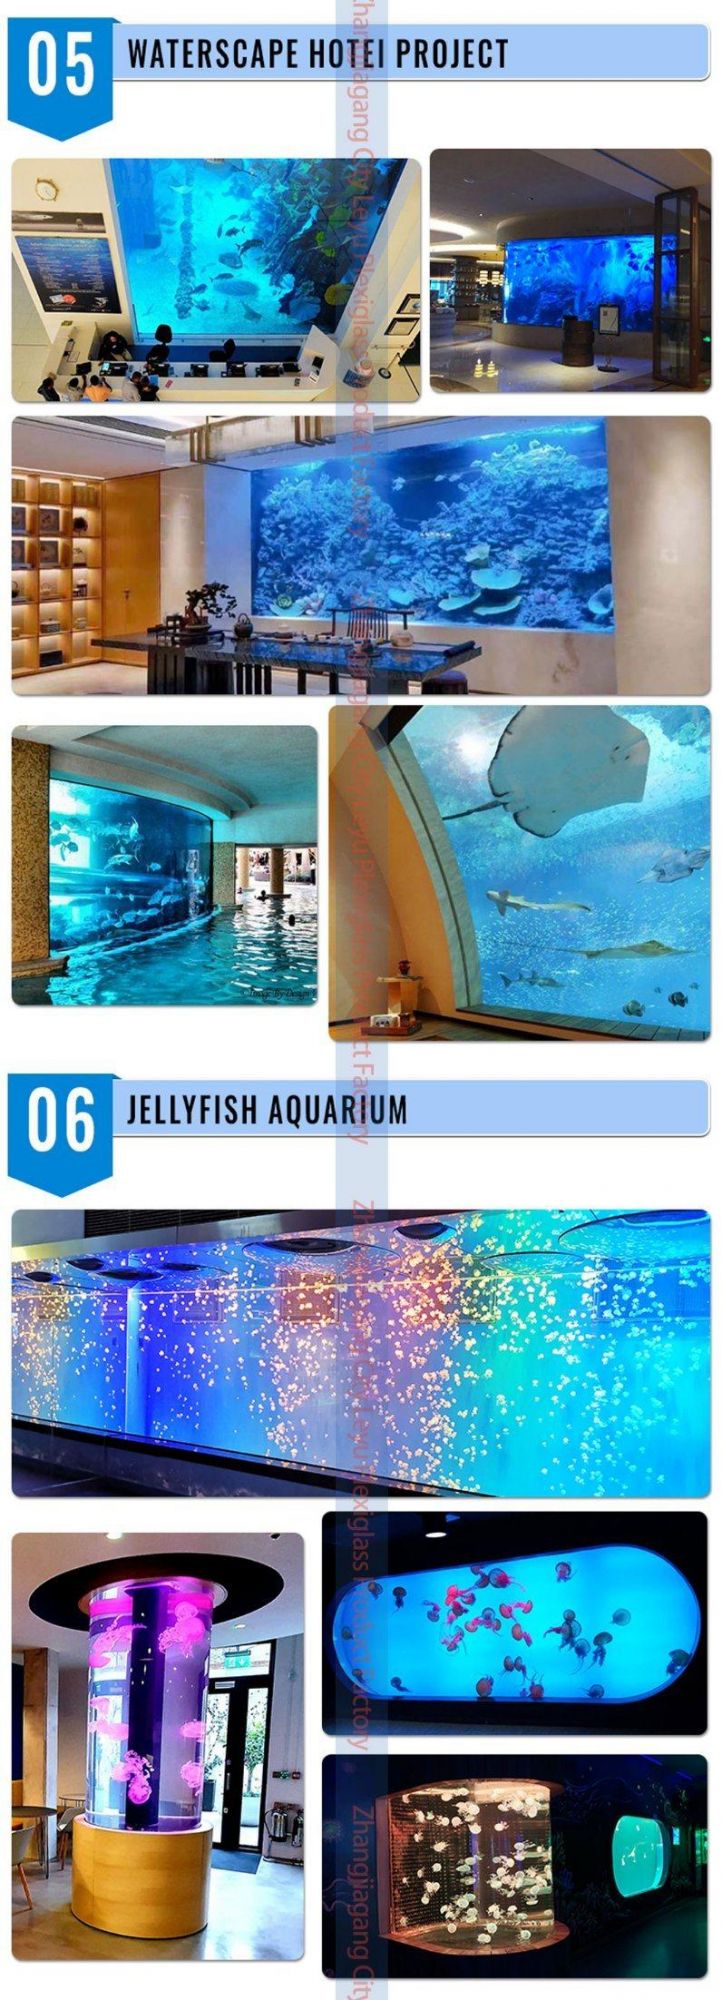 Large Bullet Shaped Fish Tank Aquarium Acrylic